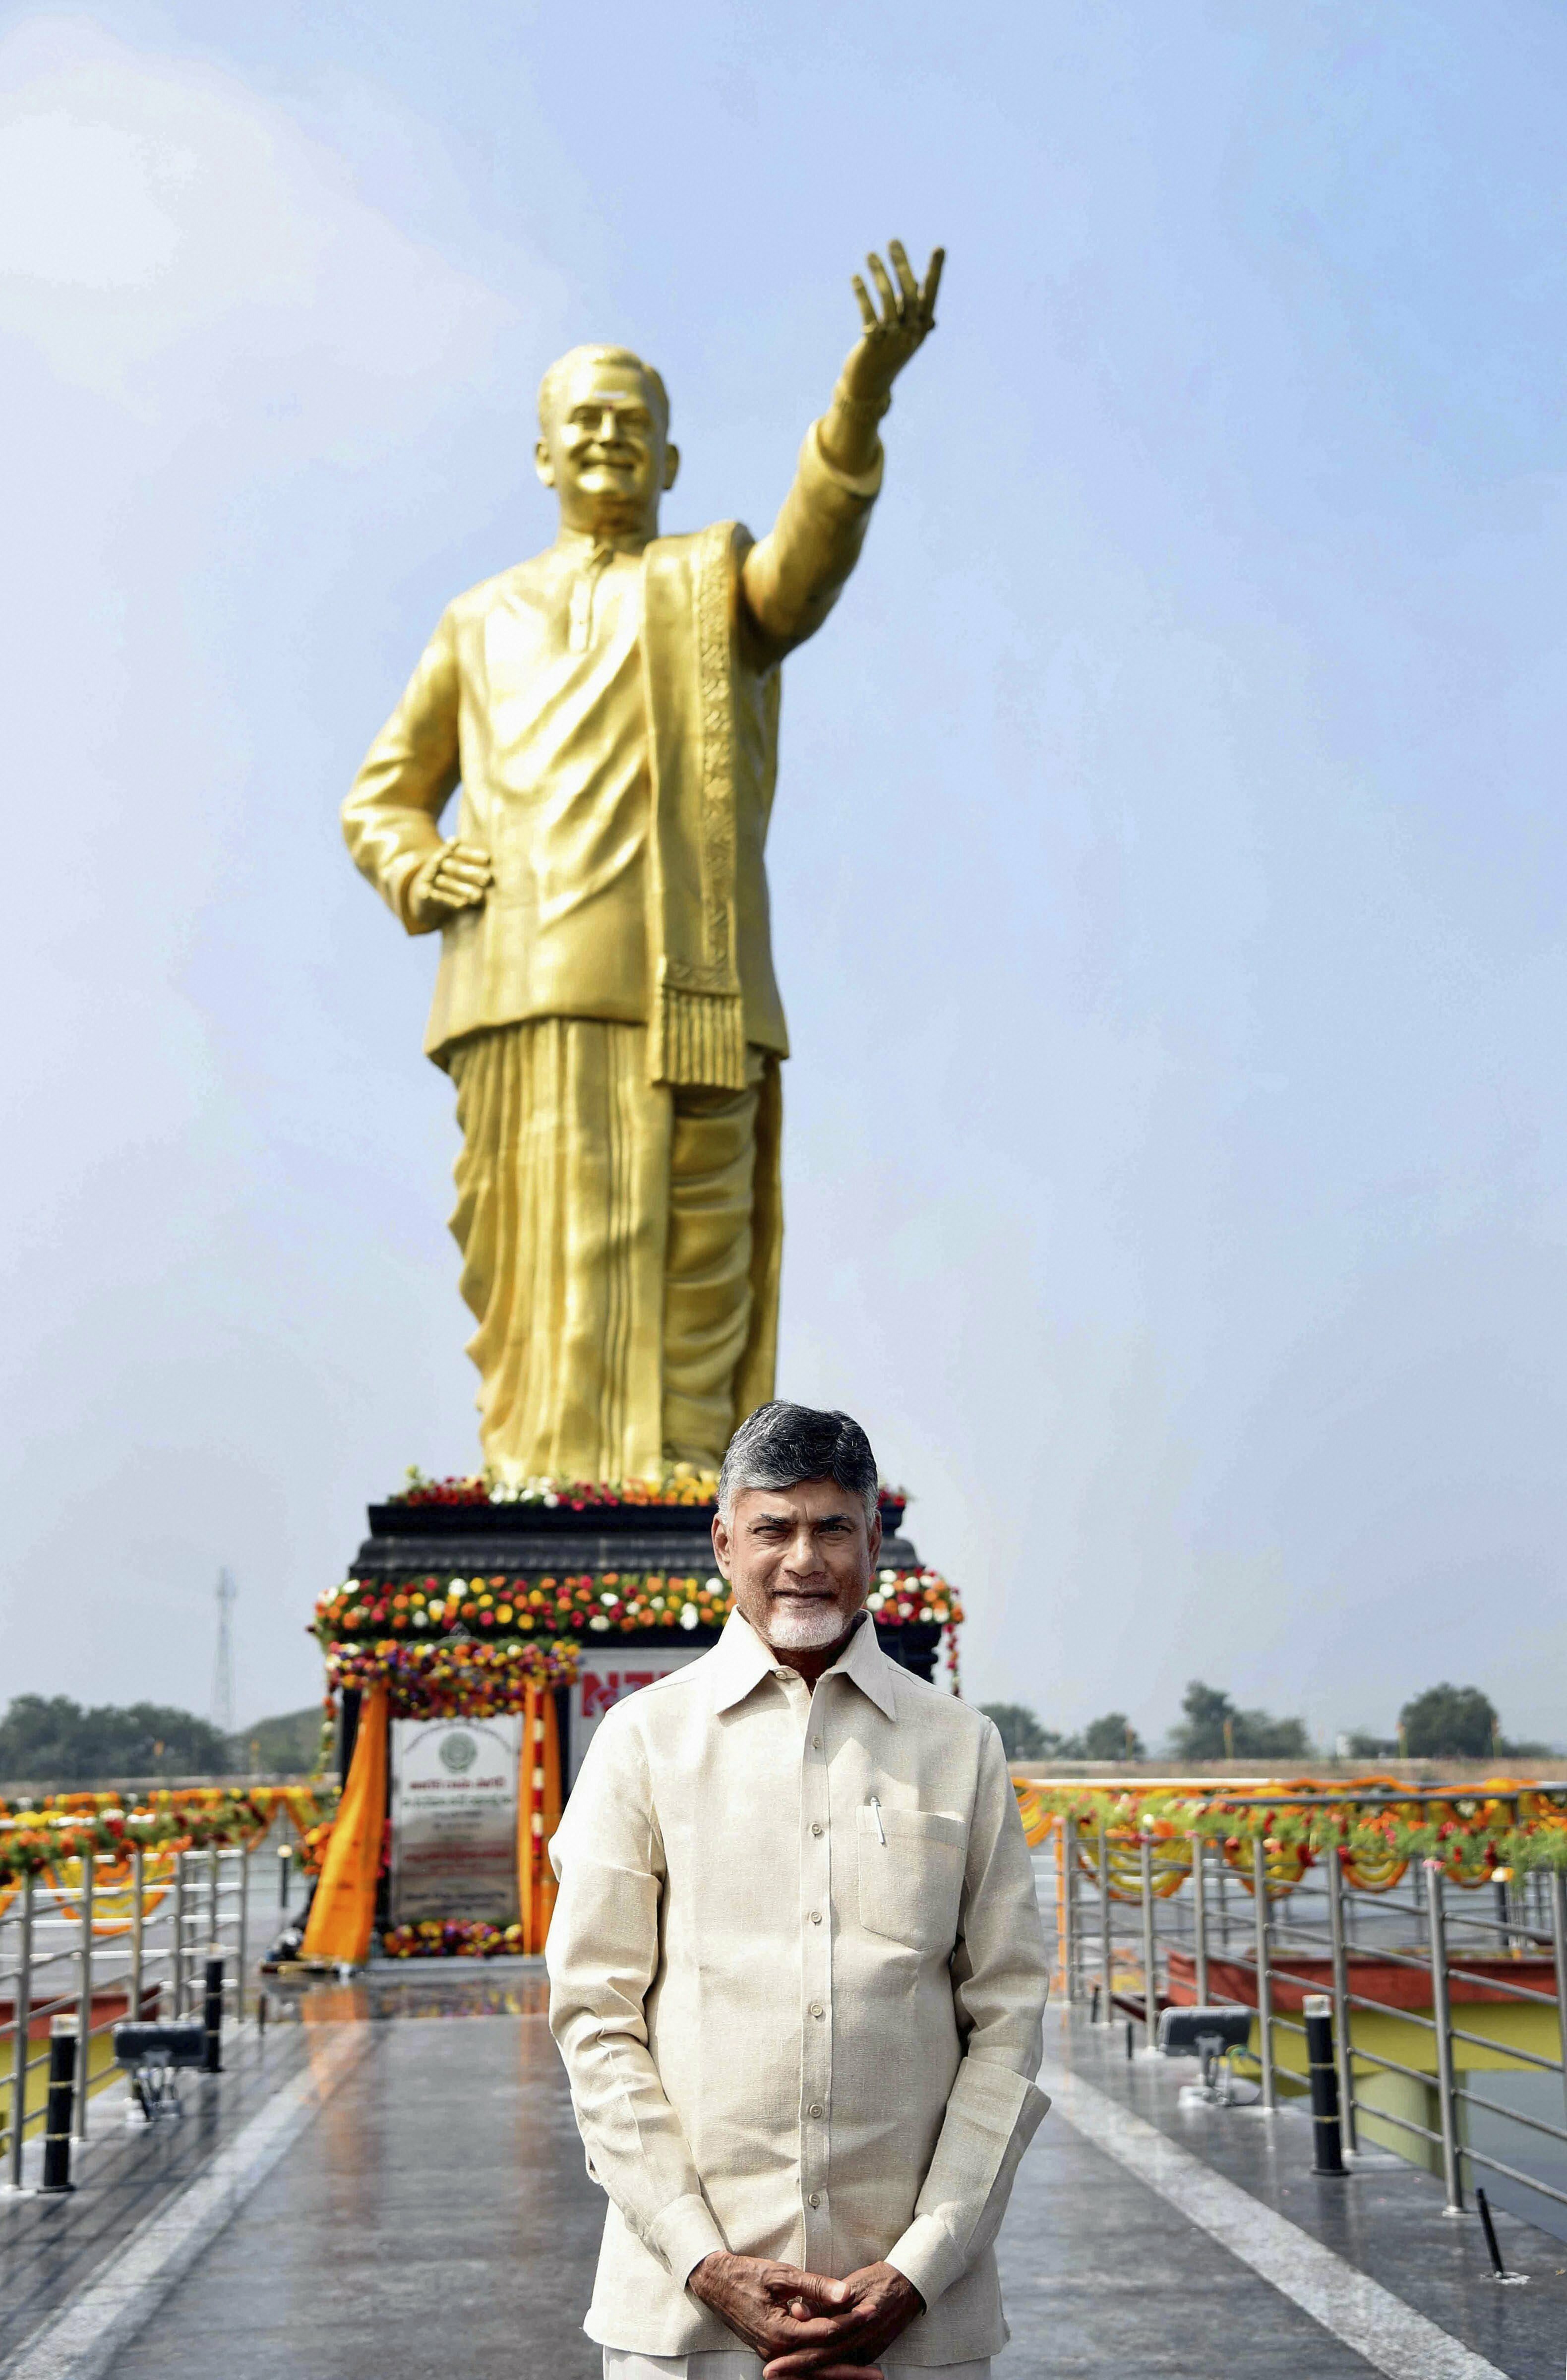 Andhra Pradesh Chief Minister N Chandrababu Naidu poses for photos at NTR Gardens after unveiling a statue of Vavilala Gopalakrishnaiah, in Guntur - PTI